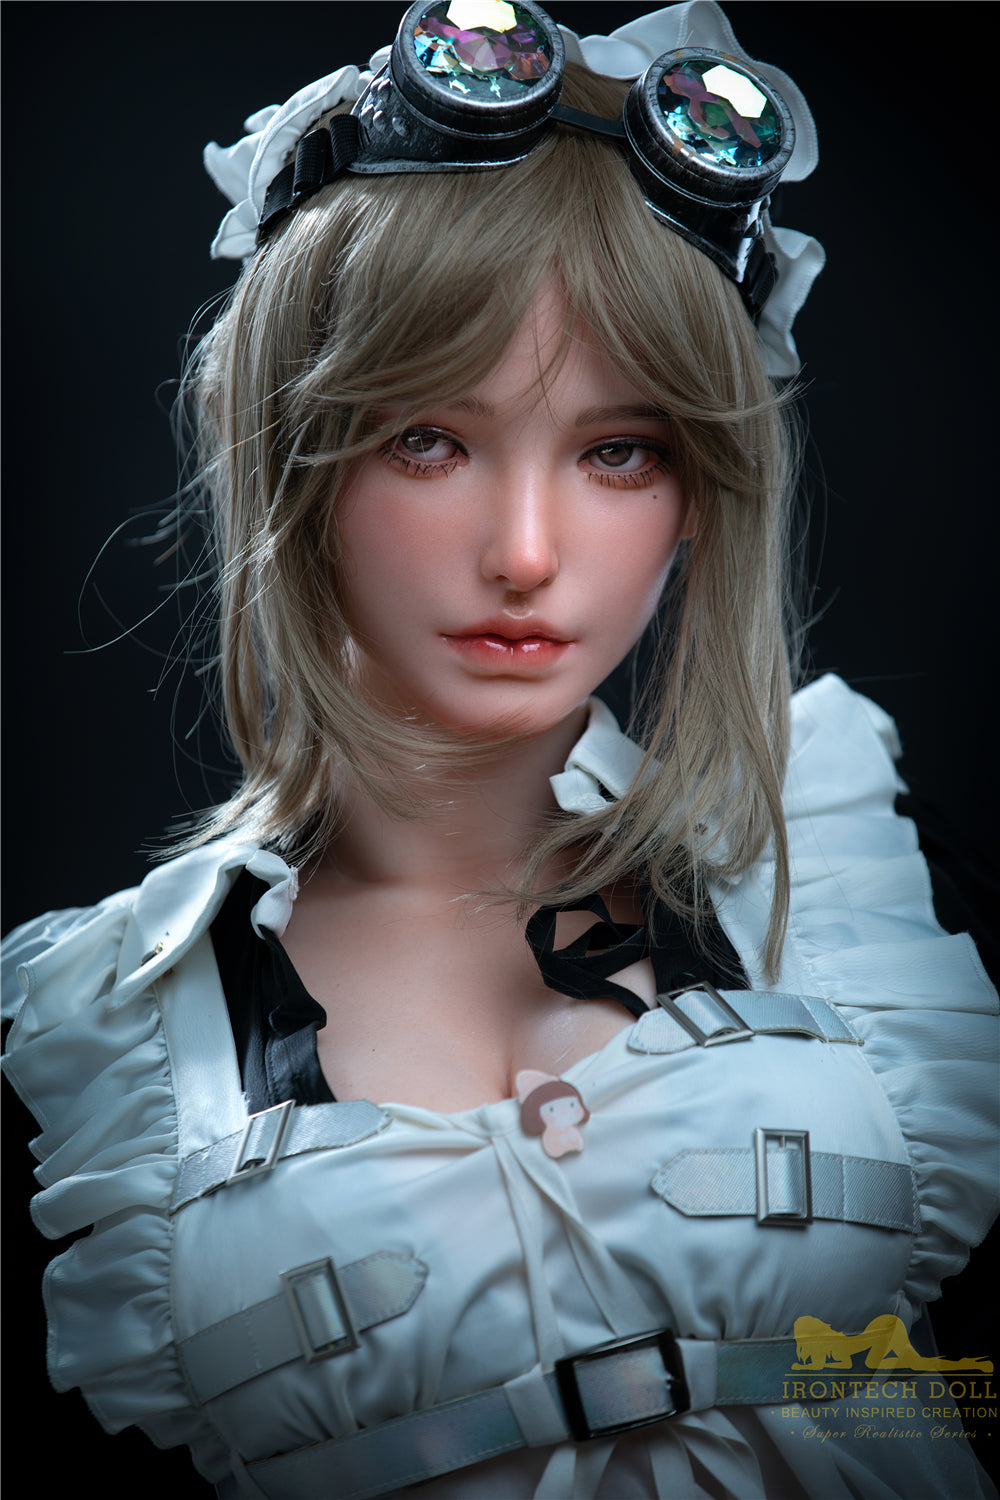 Eva Servant Silicone Love Doll - Iron Tech Doll